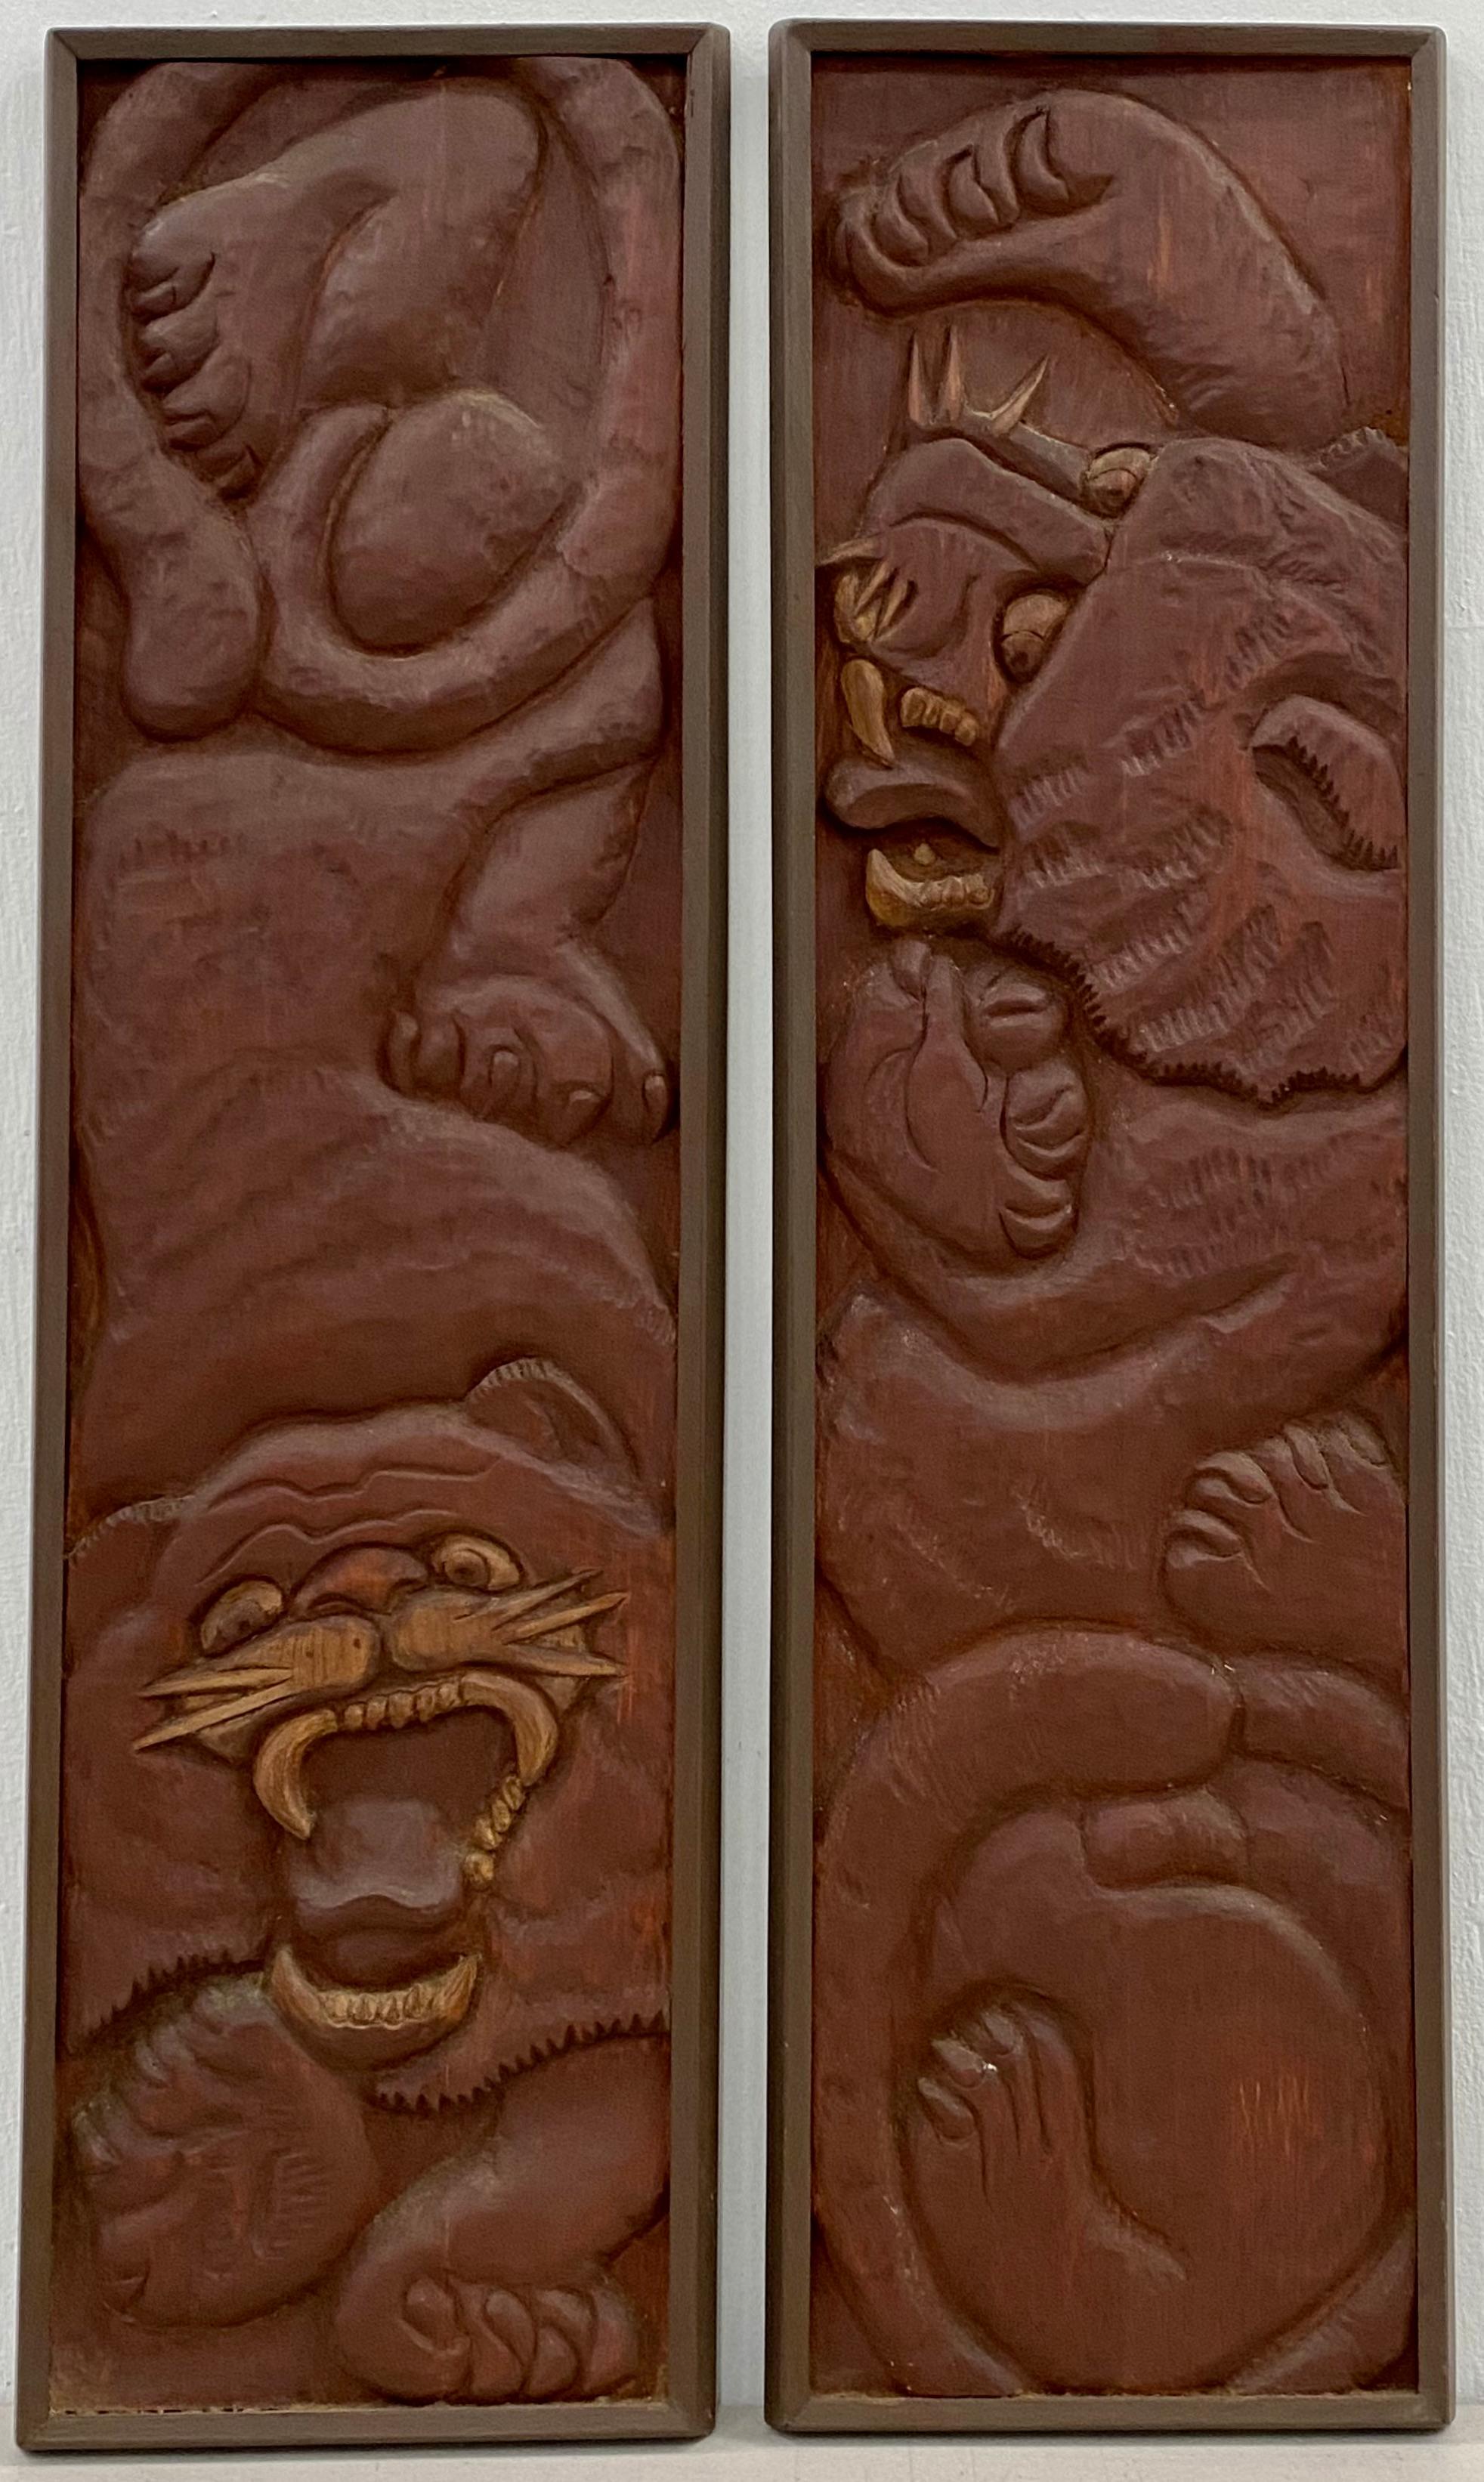 Richard Whalen (Américain, 1926-2009) "Deux tigres" Sculptures murales originales en bois C.1970

Tigres sculptés à la main en relief 

Chaque pièce mesure 8" de large x 30.75" de haut

Non signé

Richard Whalen était un sculpteur américain et un